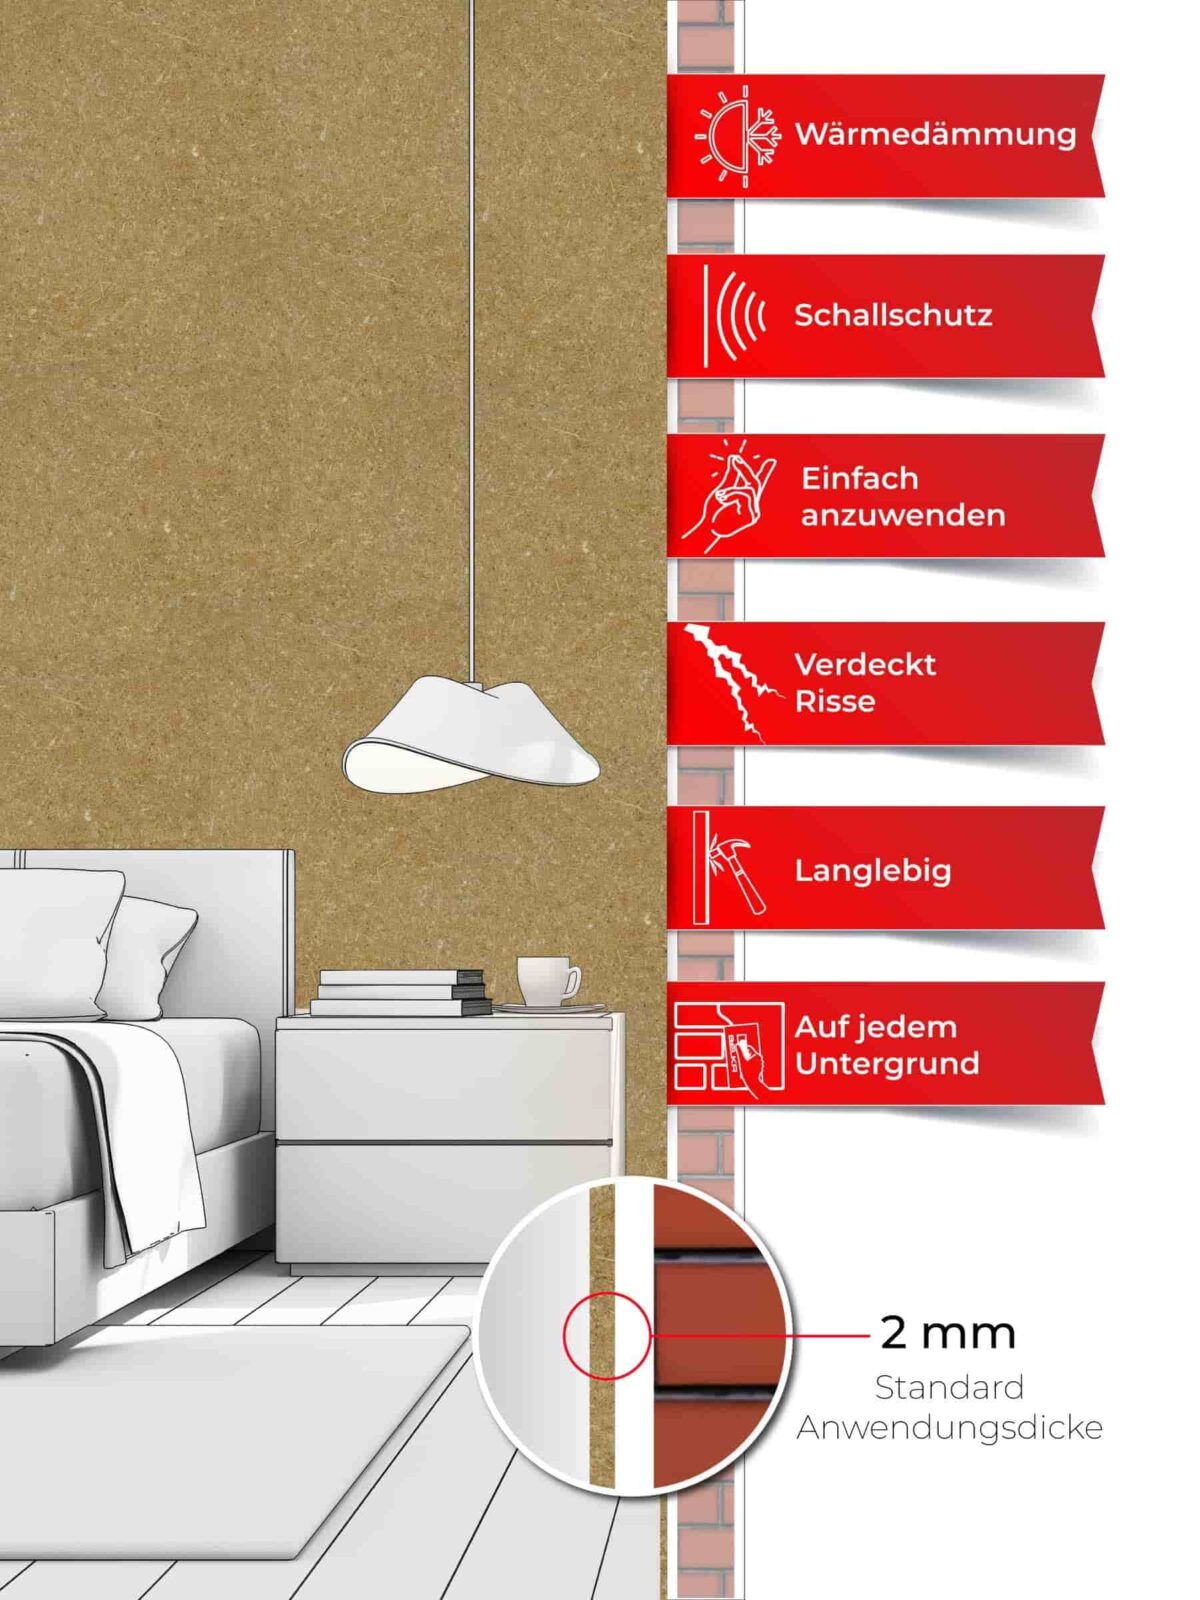 Ein Schlafzimmer, dessen Wände mit Belka Tapete Beige Creme tapeziert sind. Produktmerkmale auf sechs roten Etiketten.